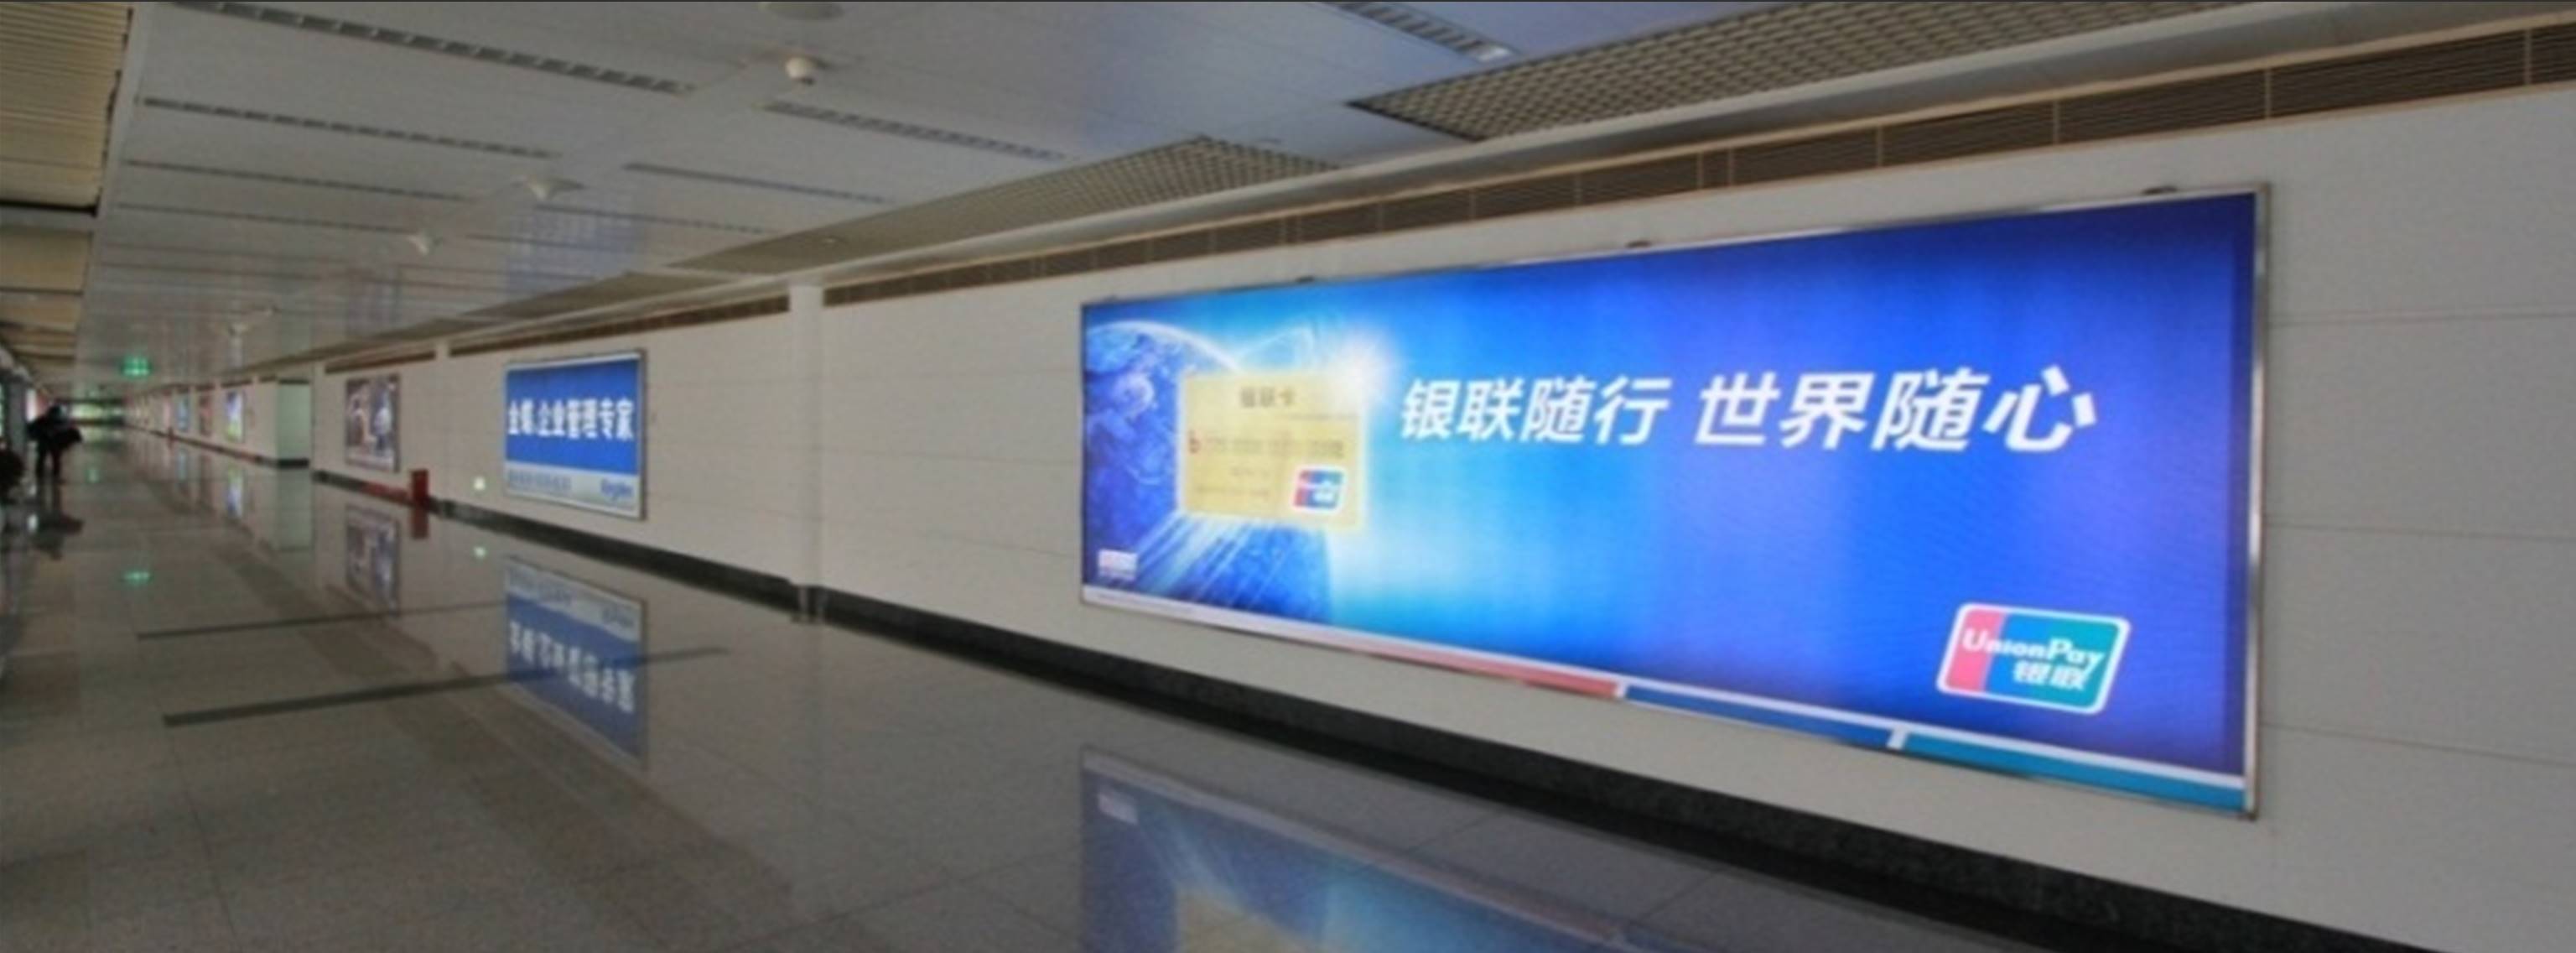 杭州萧山机场广告-T1到达夹层长廊灯箱DA24